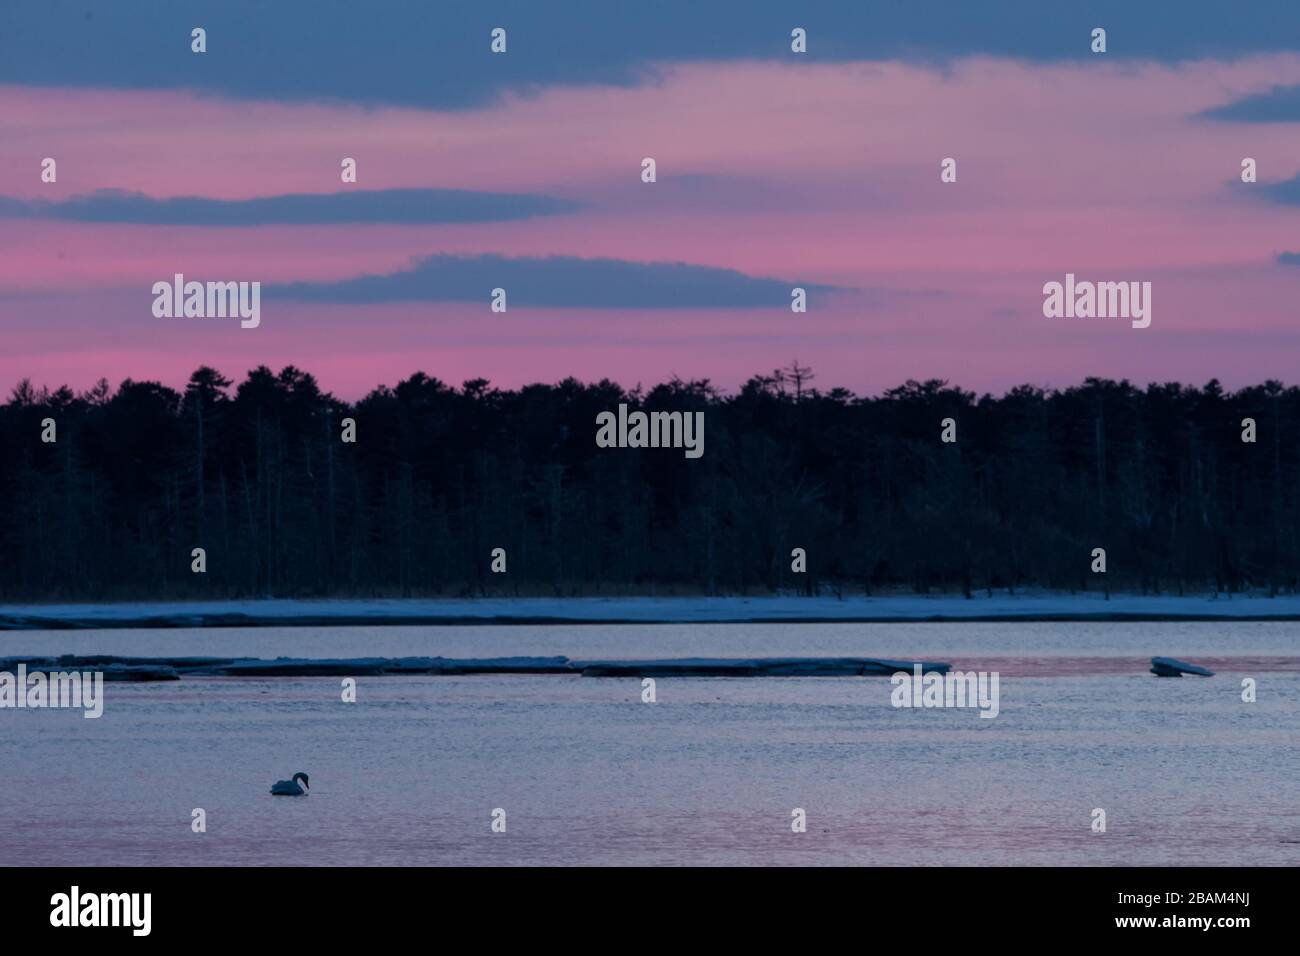 Whooper Swan ou Cygnus cygnus nageant sur le lac en hiver pendant un coucher de soleil magique et coloré, Hokkaido, Japon, conte de fées, lac de cygne, papier peint, oiseaux advenne Banque D'Images